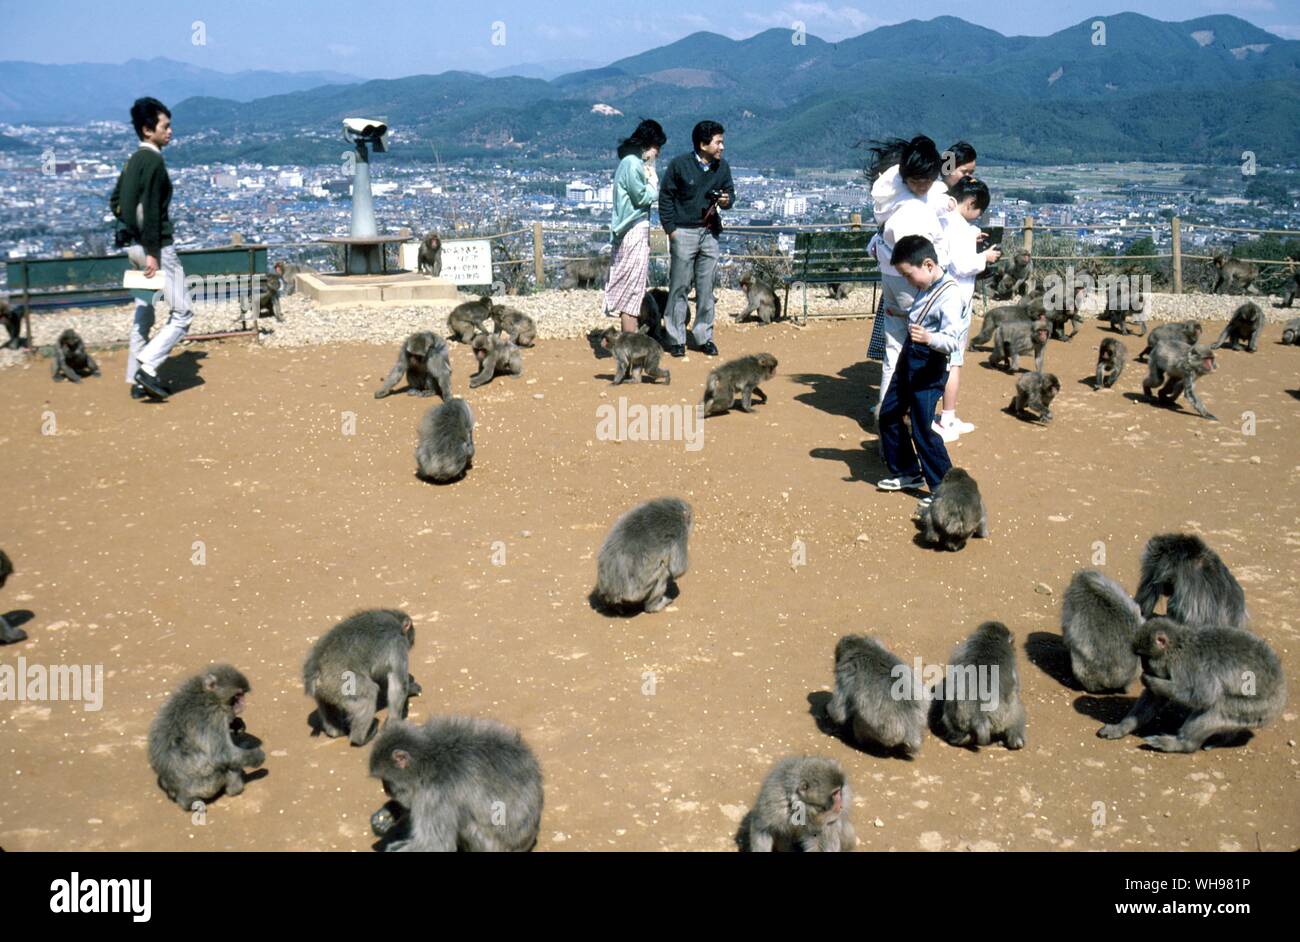 Parque de Monos Arashiyama con vistas a Kyoto de Japón a una treintena de parques de monos macacos alimentan el turismo Foto de stock